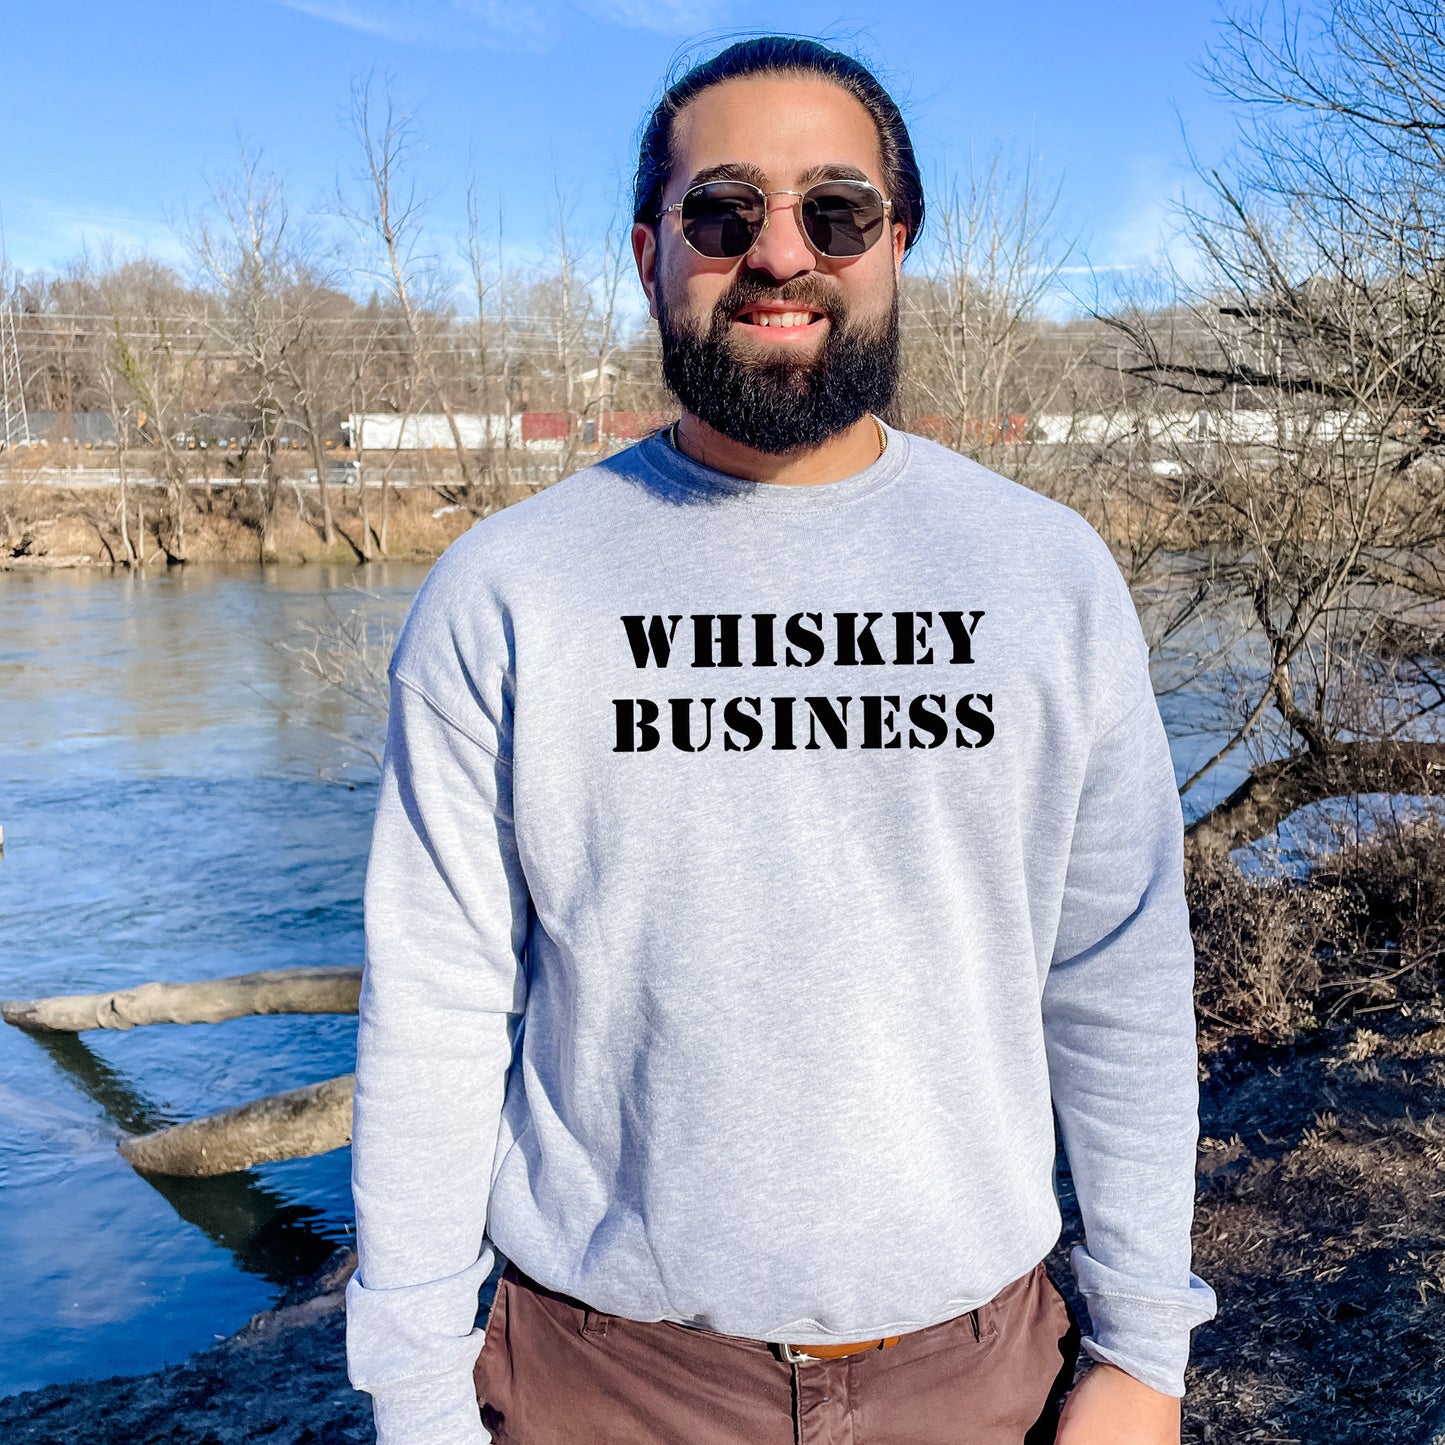 Whiskey Business - Unisex Sweatshirt - Dusty Blue or Athletic Heather